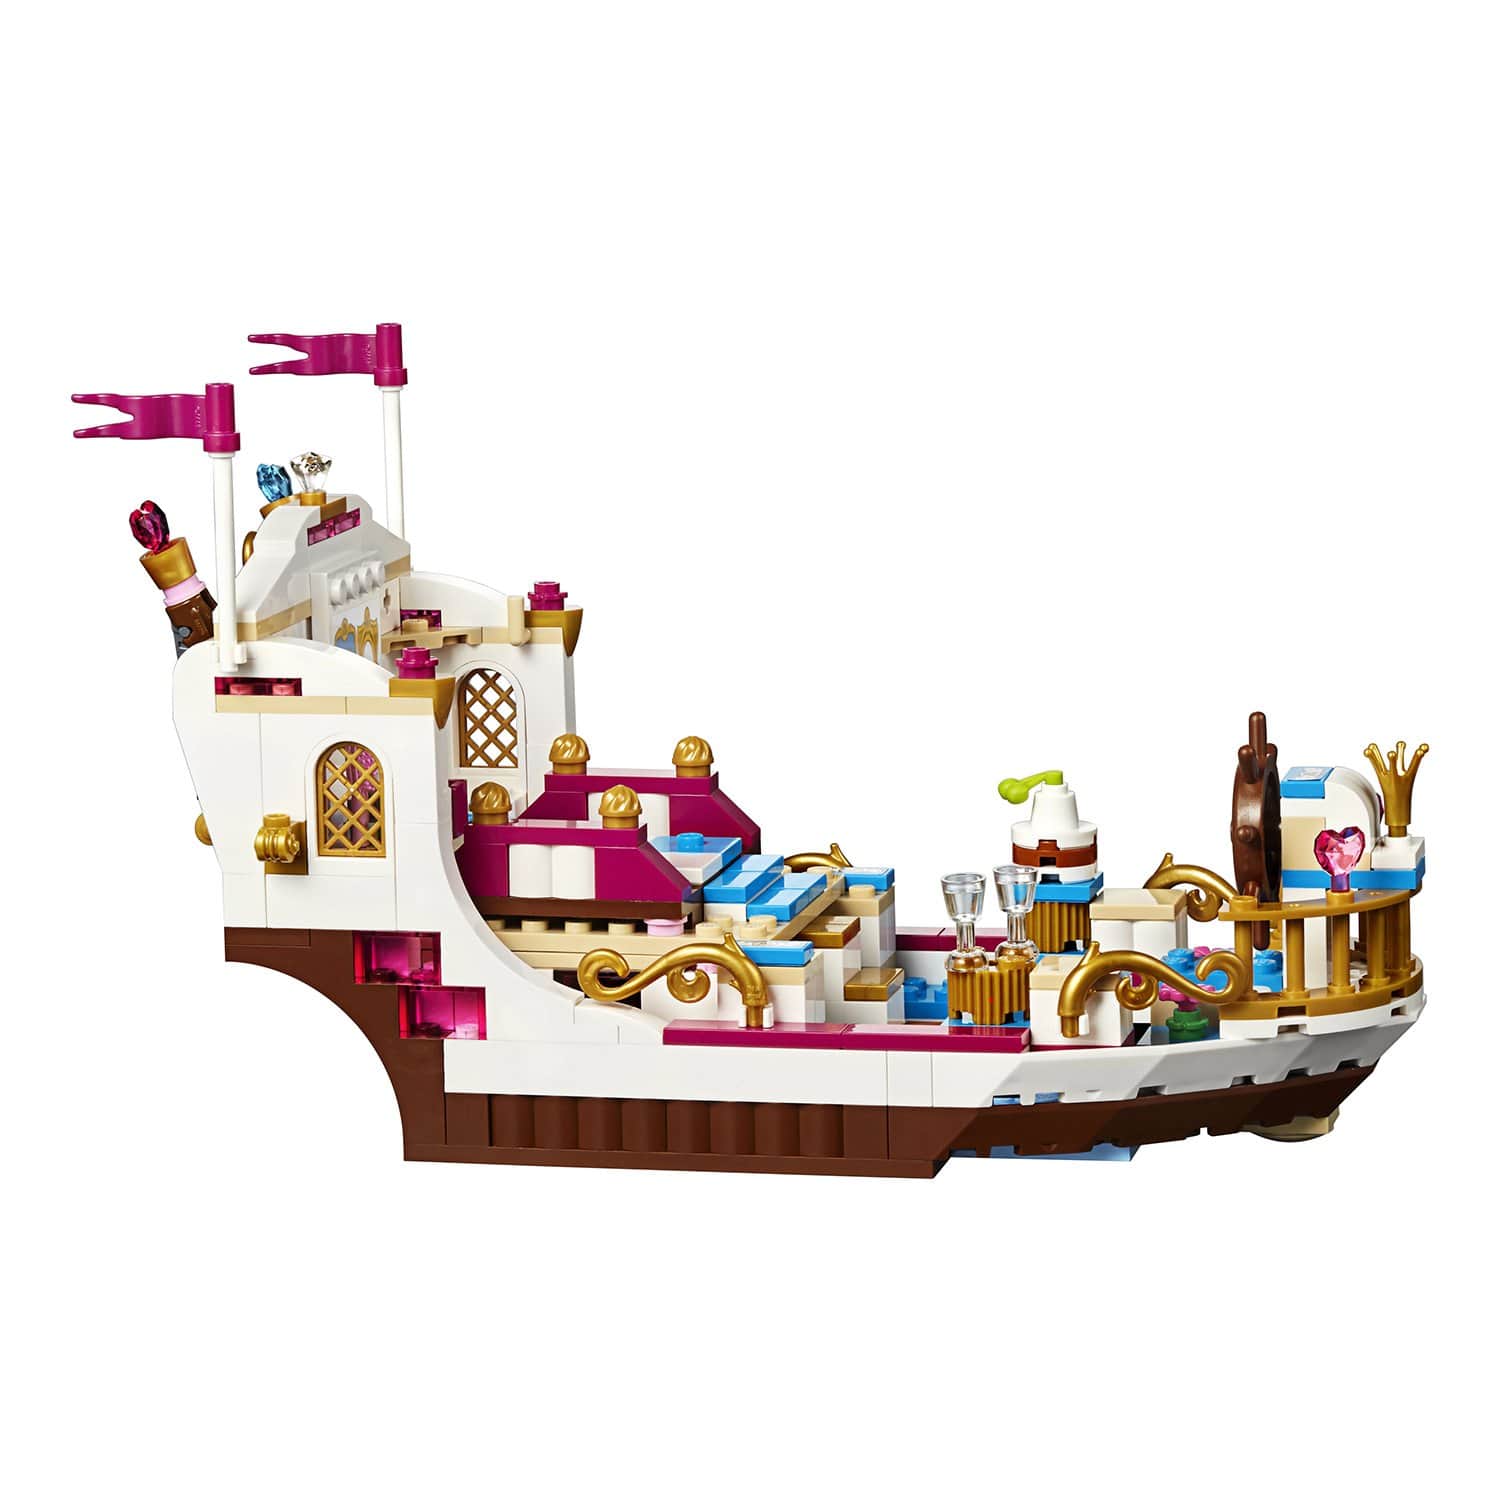 Конструктор LEGO Disney Princess 41153 Королевский корабль Ариэль